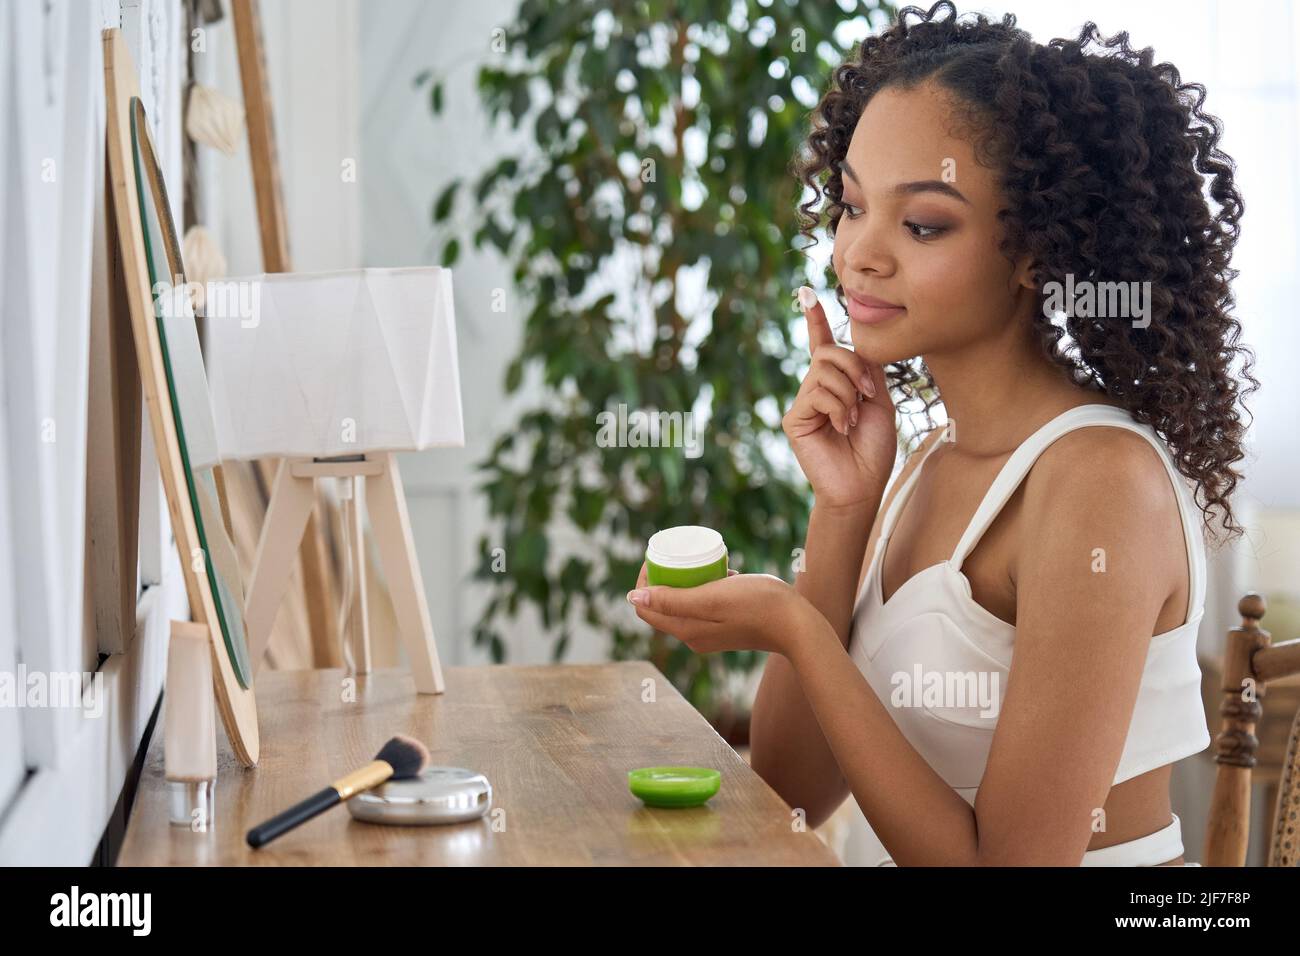 Adolescente afro-américaine assise regardant le miroir appliquant la crème faciale. Banque D'Images